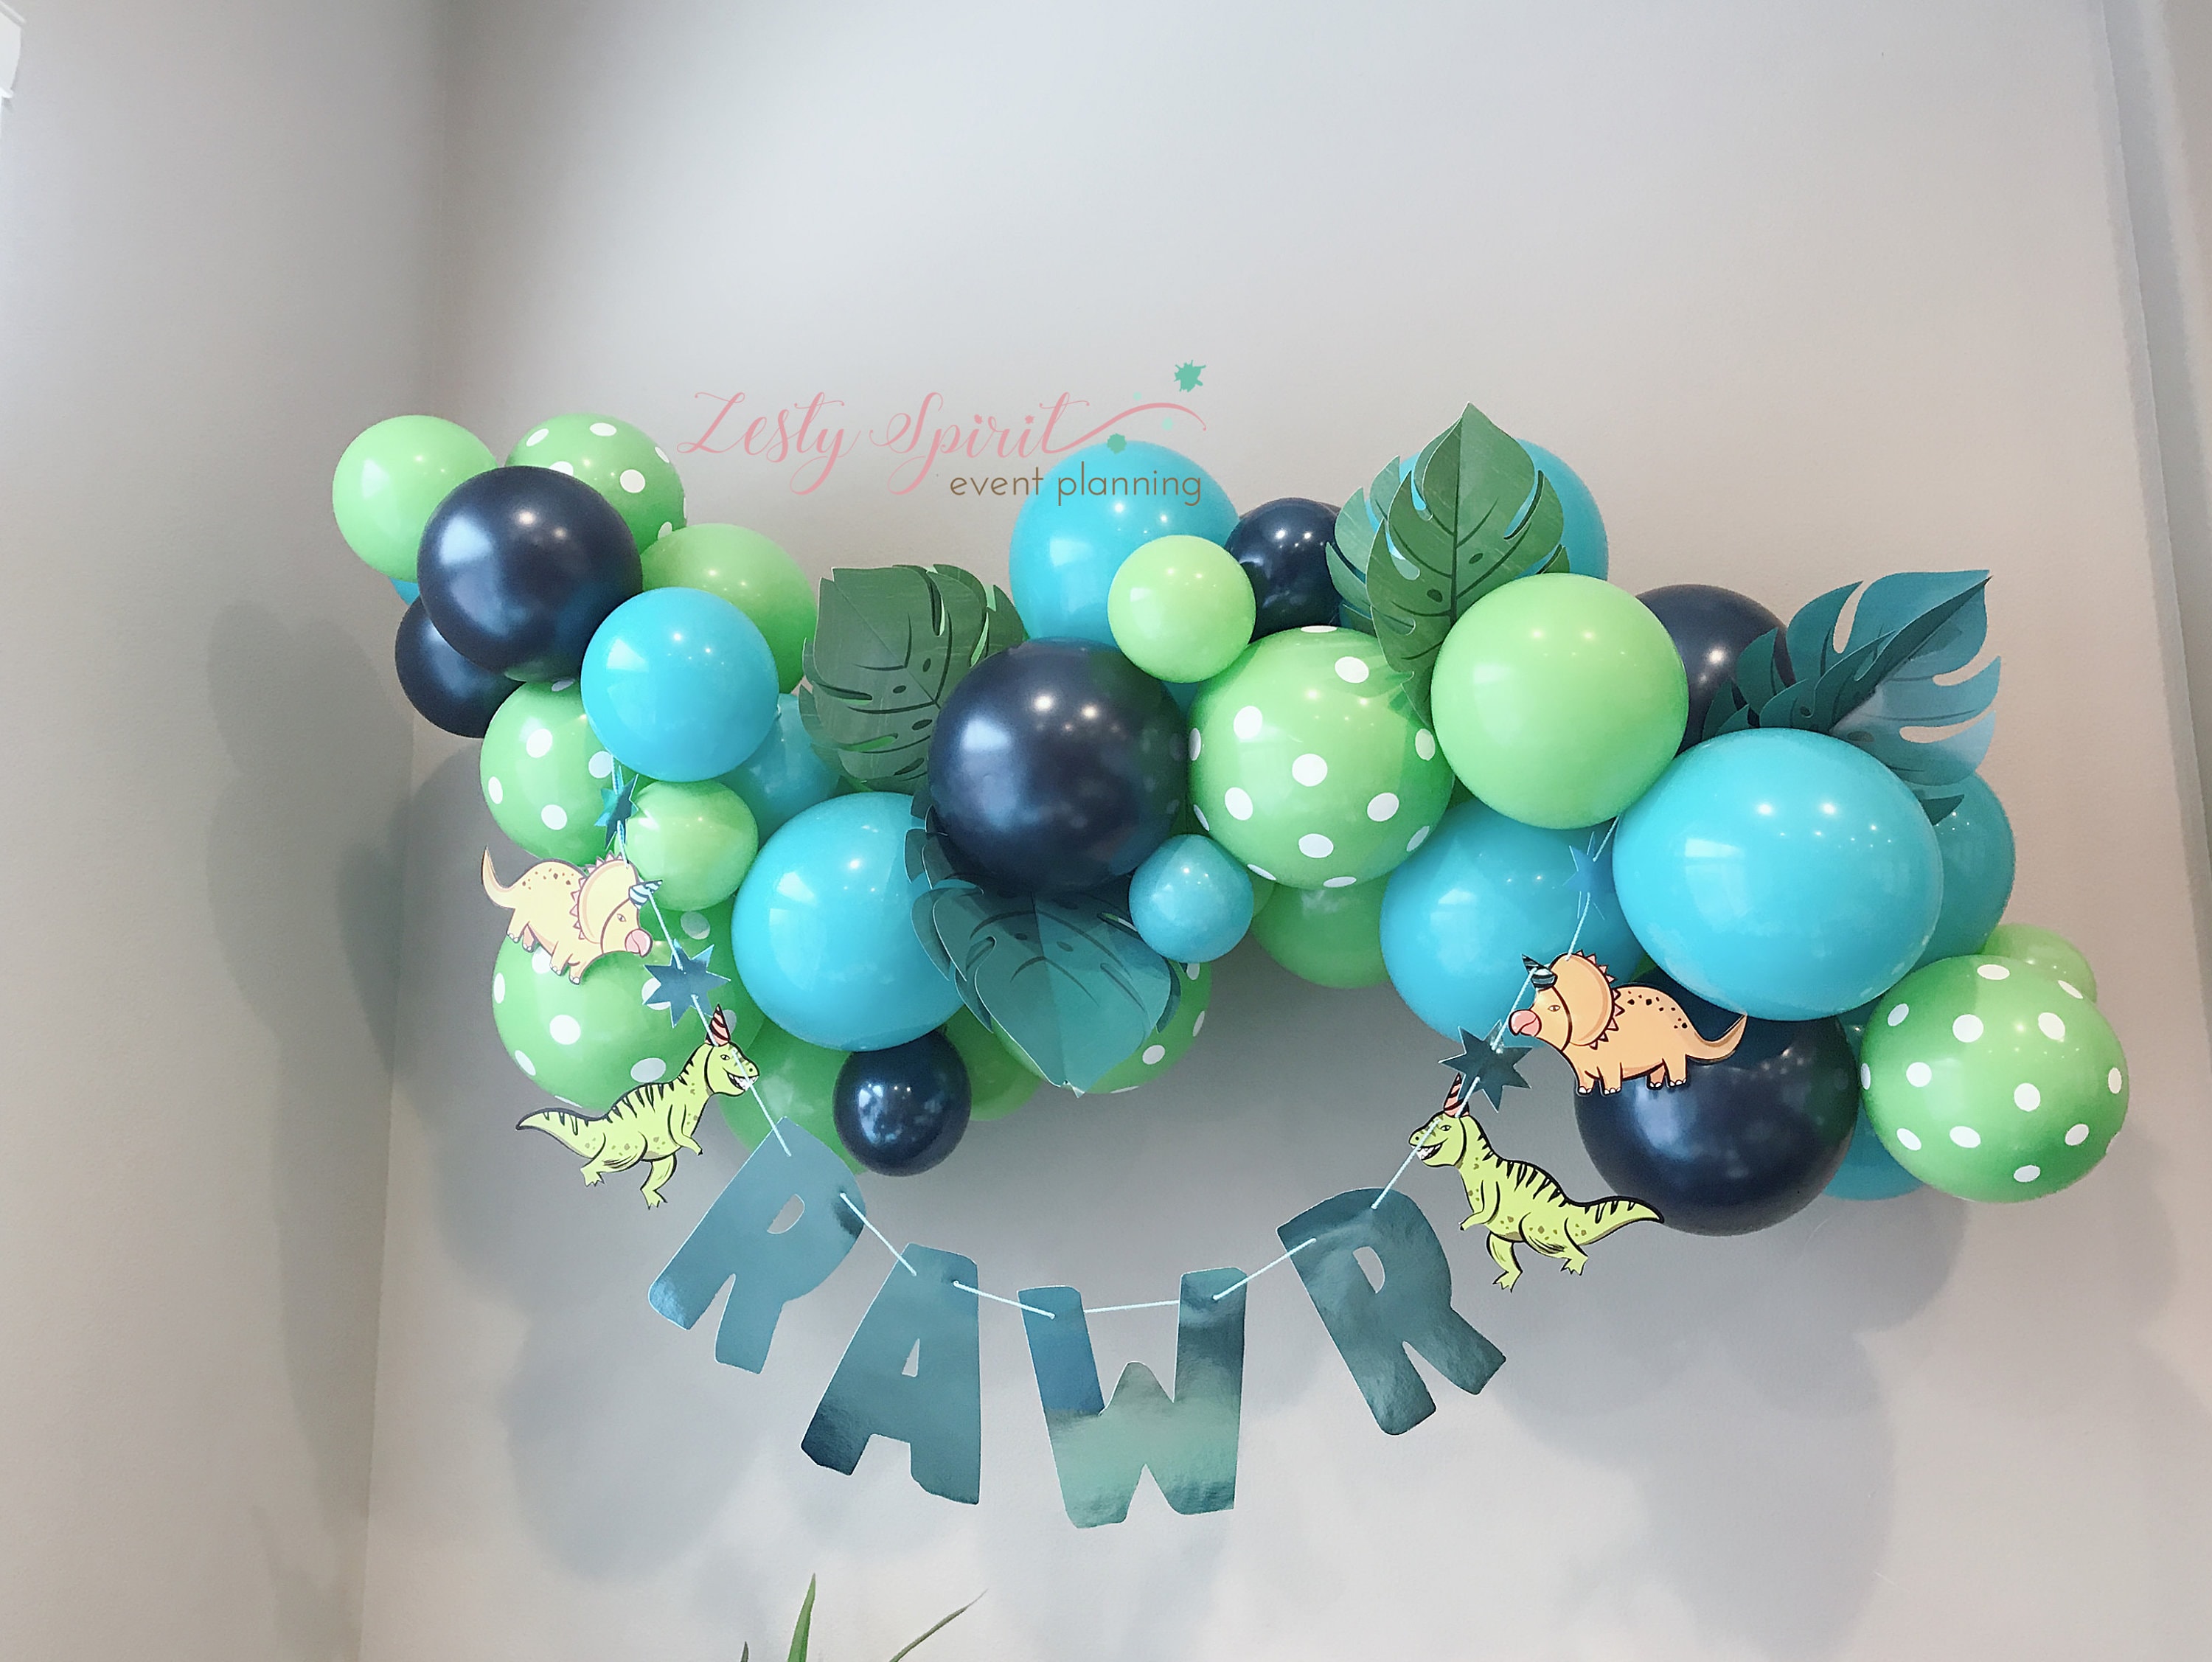 Quick balloon garland tip! #balloons #balloongarland #attachmini #ball, Balloon Arch DIY